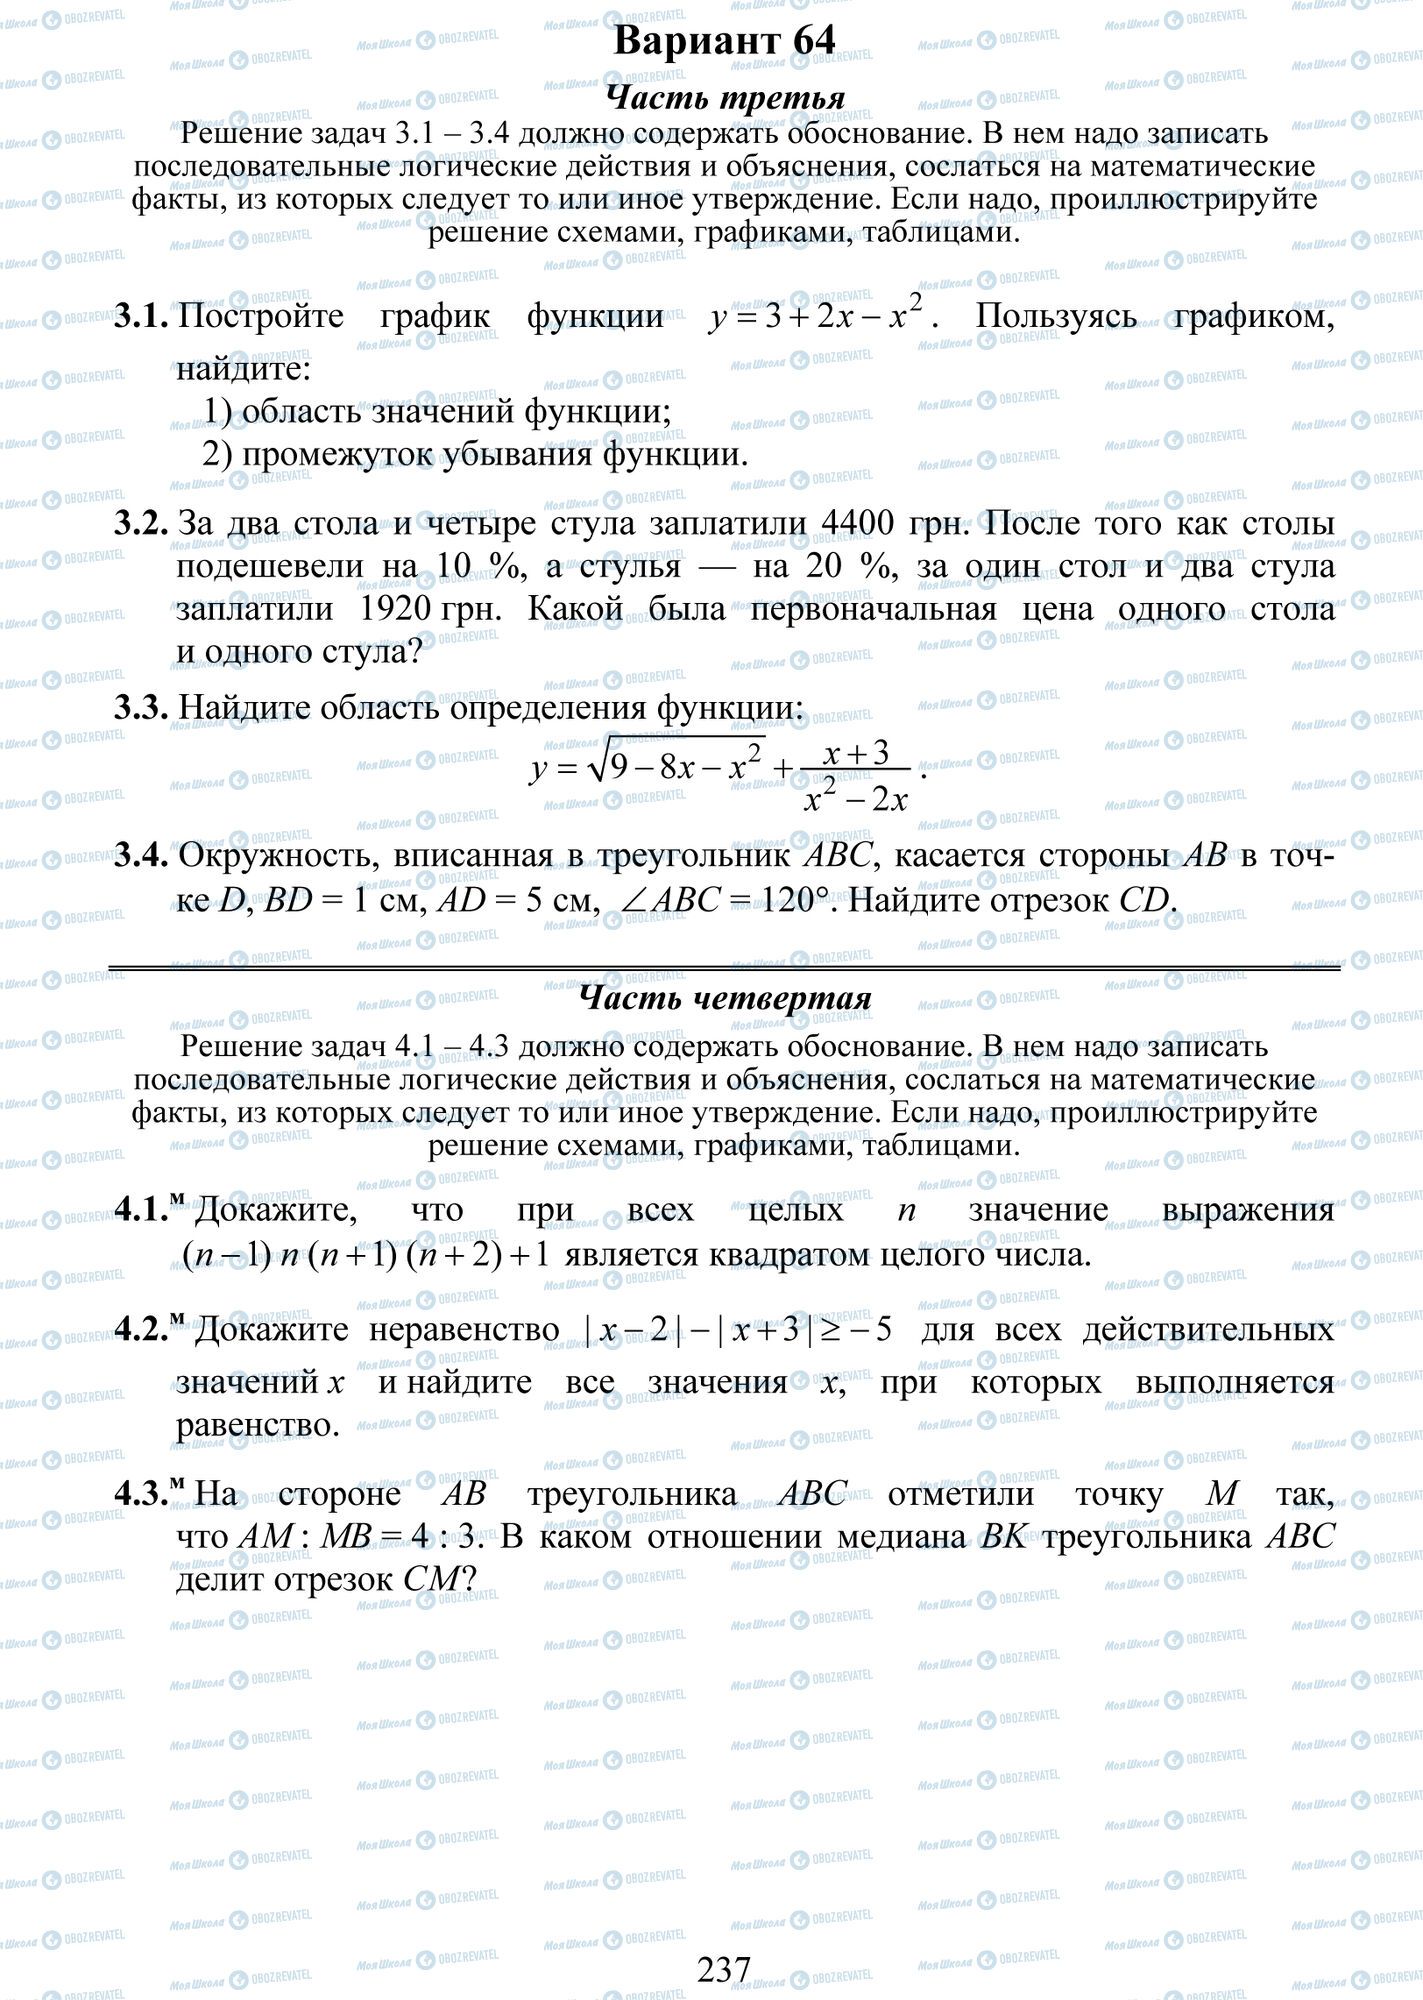 ДПА Математика 9 класс страница 1-4